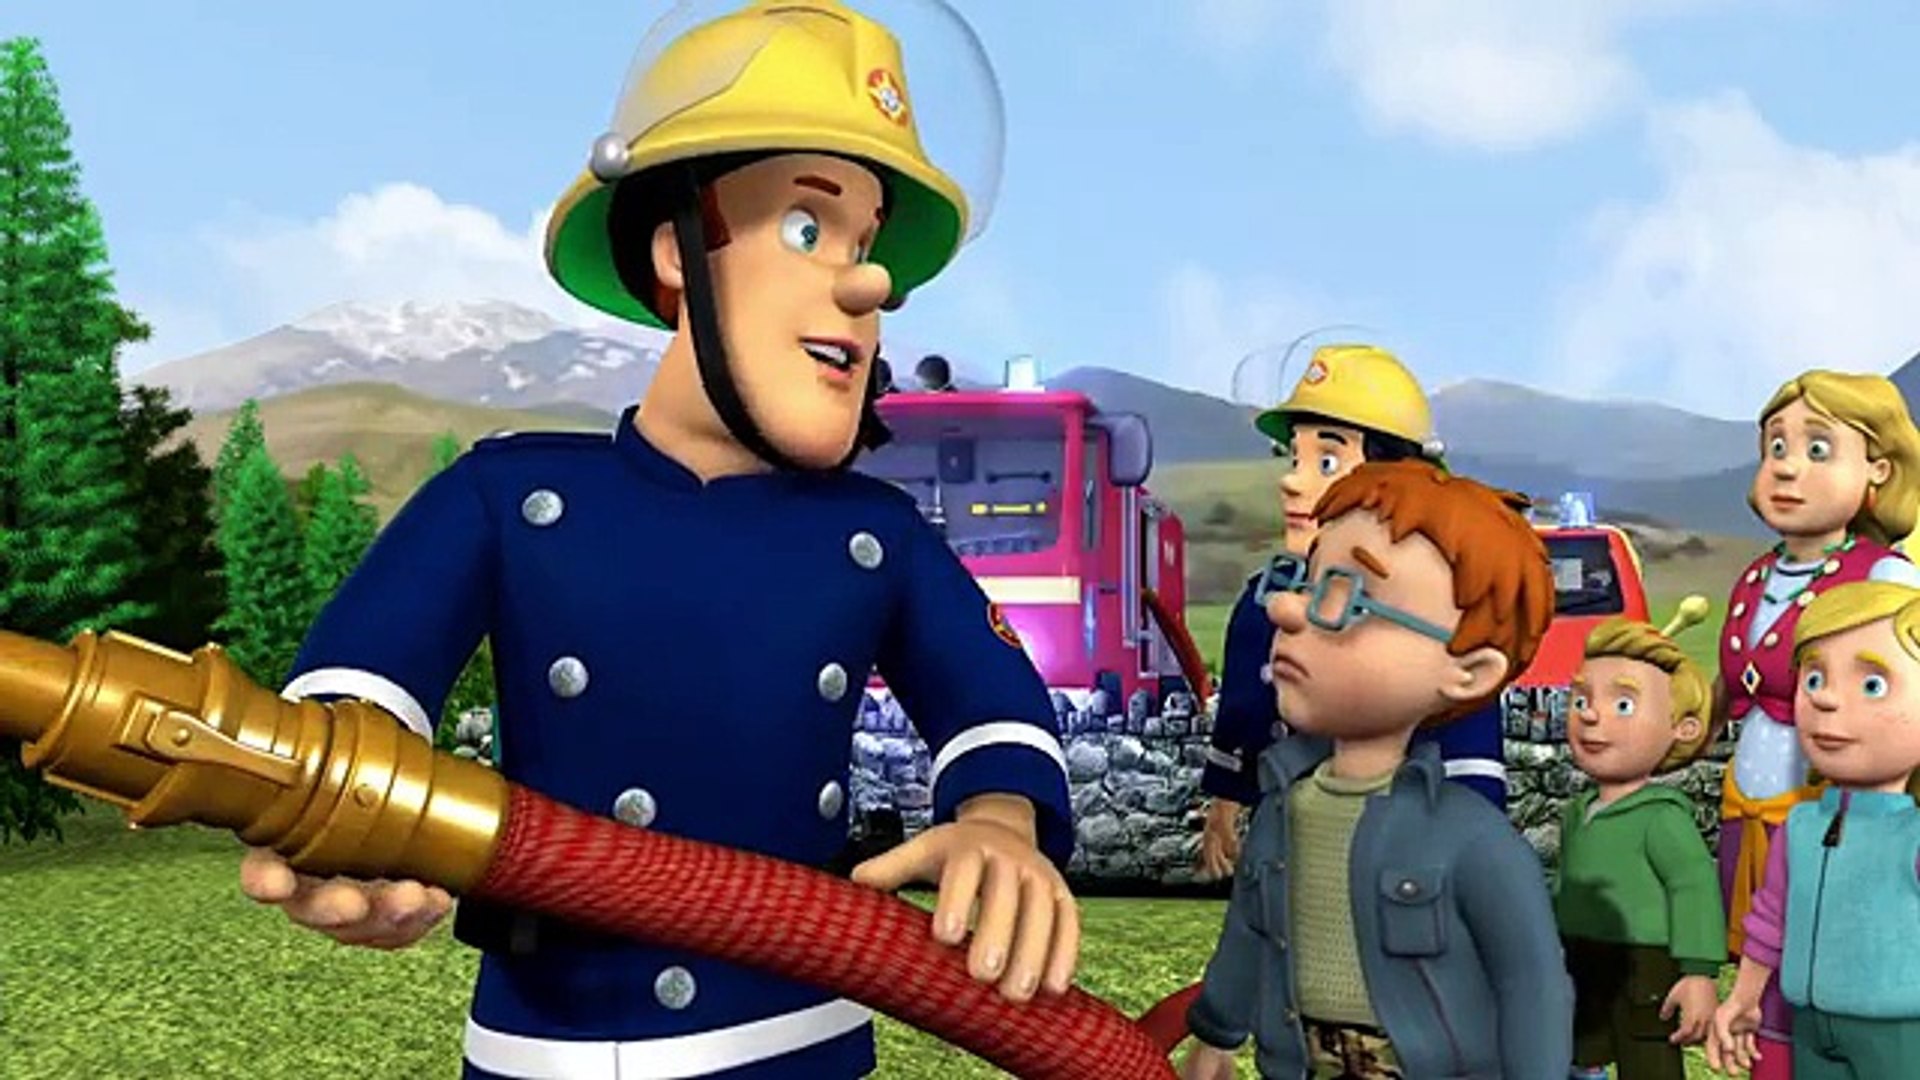 حلقات جديدة من سامي رجل الإطفاء - عمليات الإنقاذ في الثلج - حلقة كاملة من سامي  رجل الإطفاء - video Dailymotion